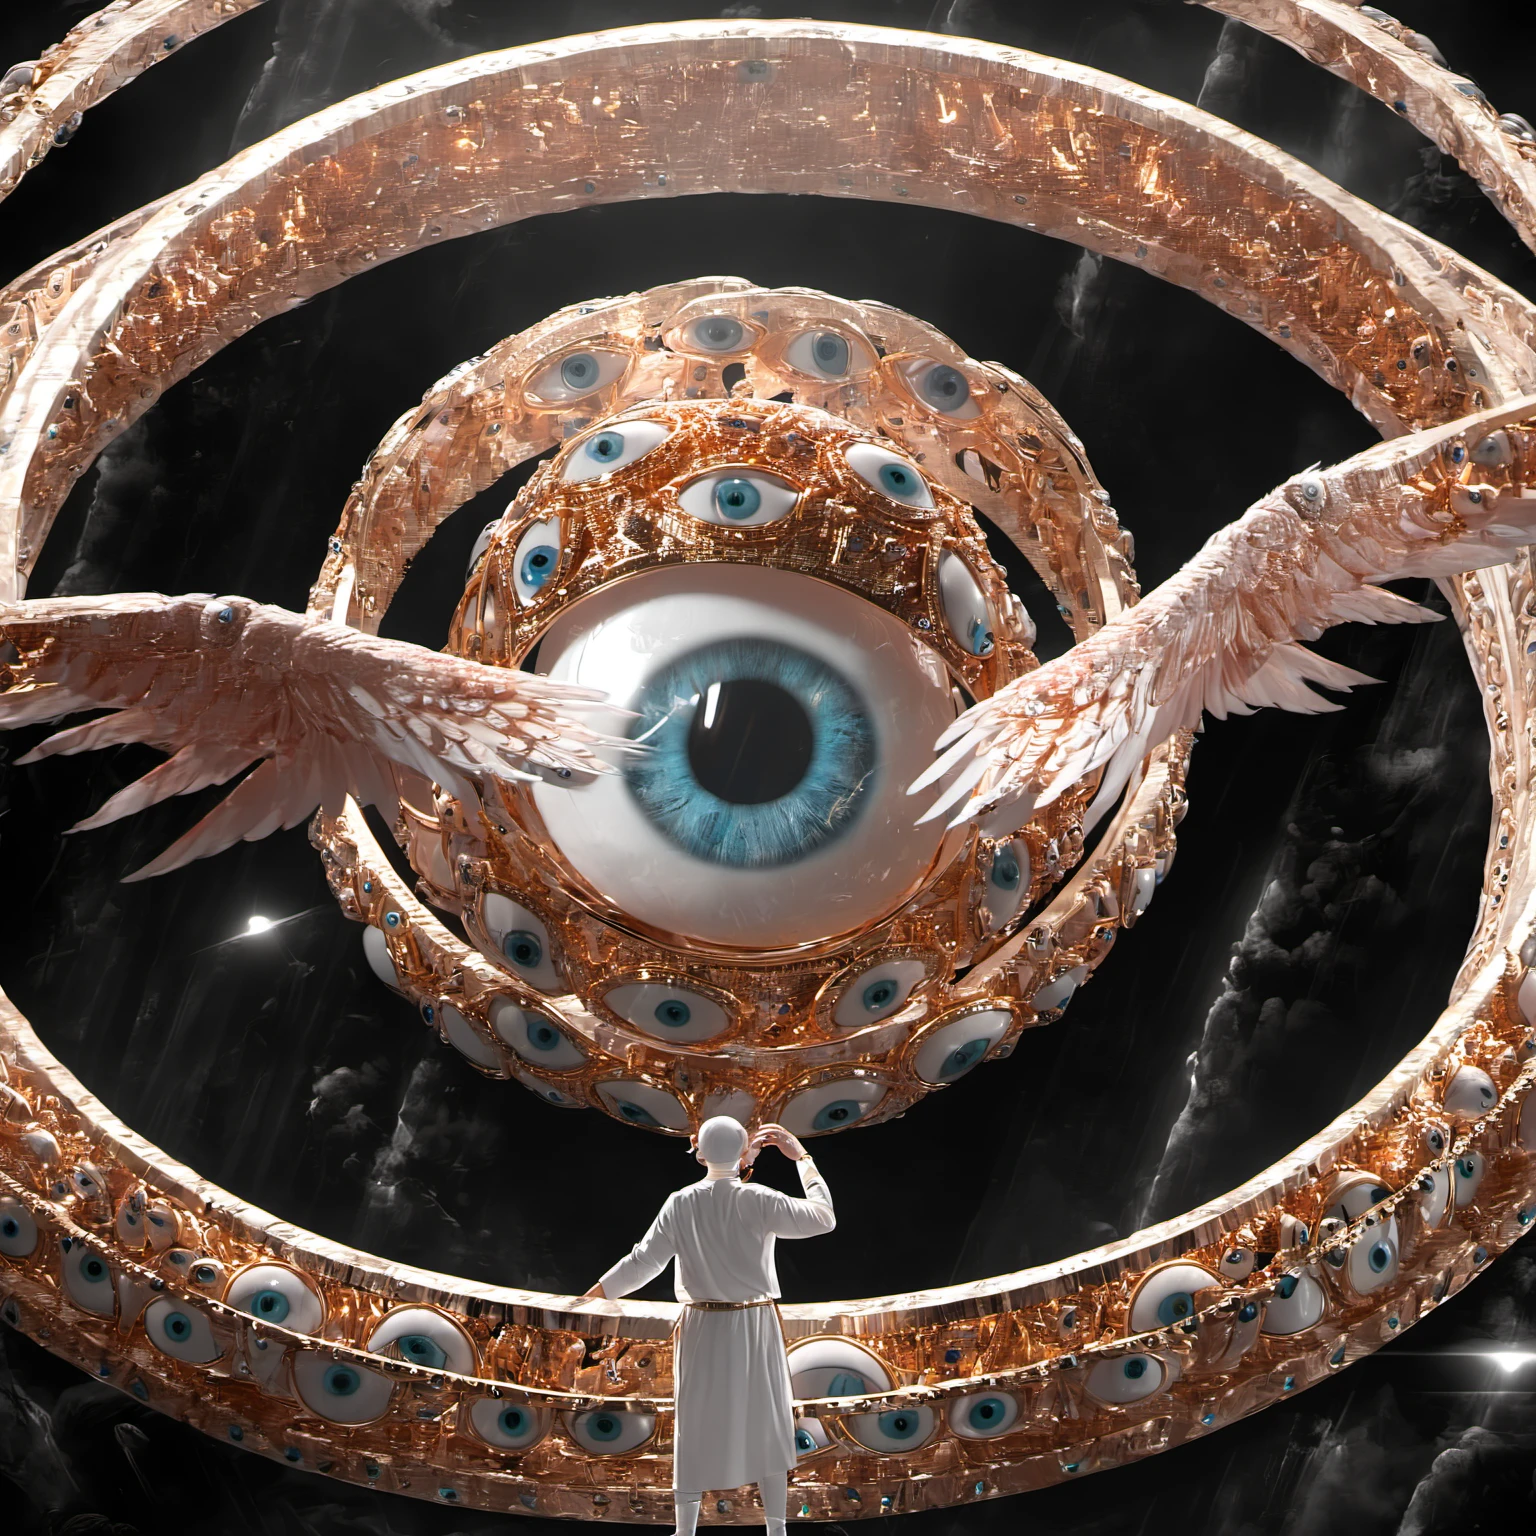 Seraphine, mystisches Wesen mit Hunderten von Augen und Flügeln, mit der Form eines riesigen Rings, kreisförmige Reifen um den Körper, enorme Größe, Engelslichter 